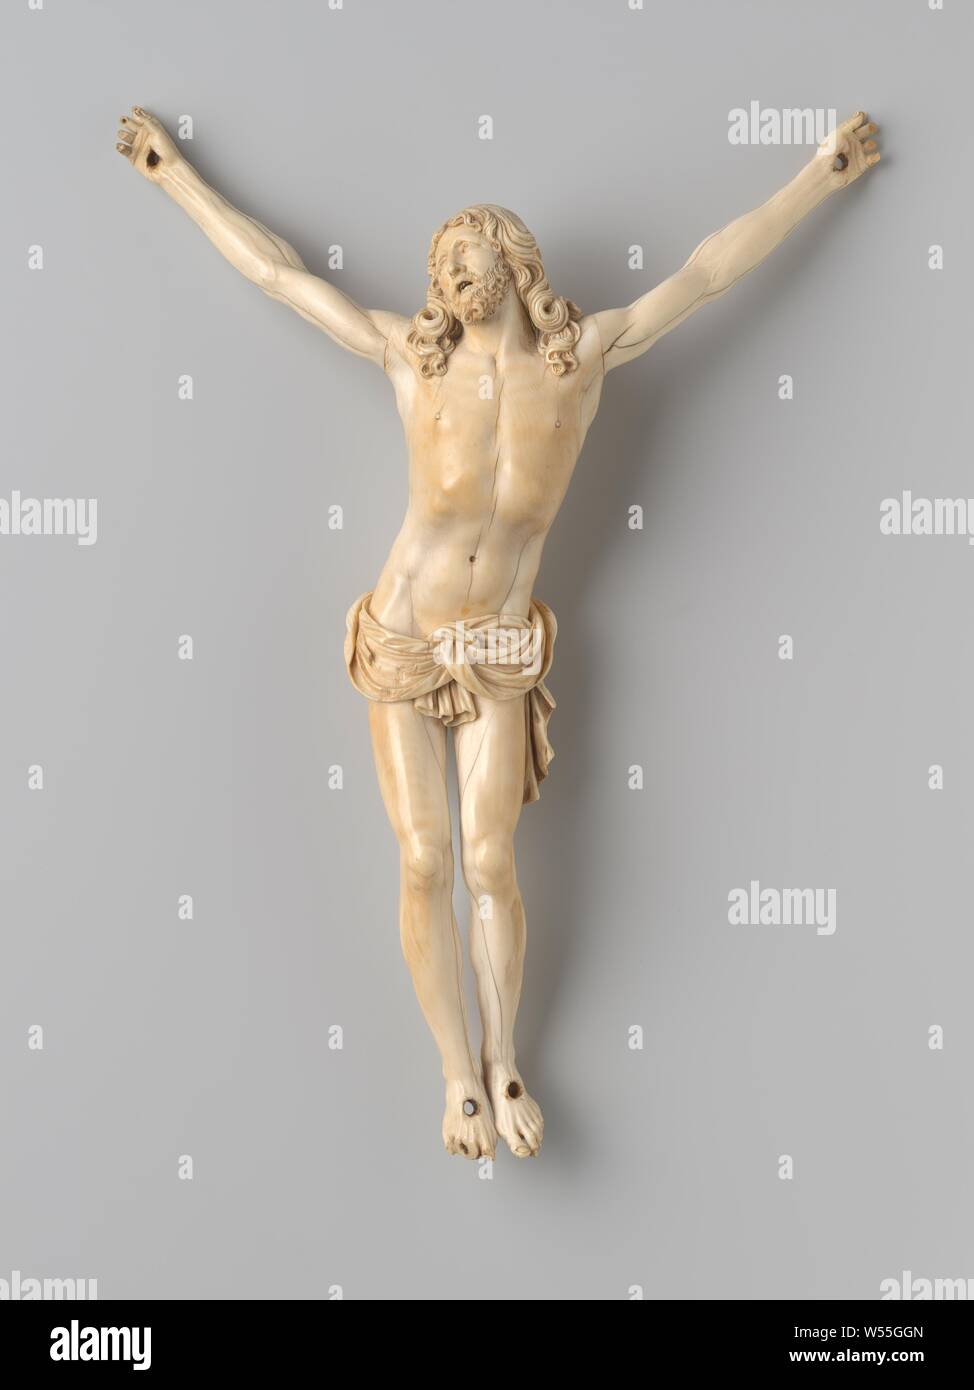 Cristo con los ojos abiertos fotografías e imágenes de alta resolución -  Alamy